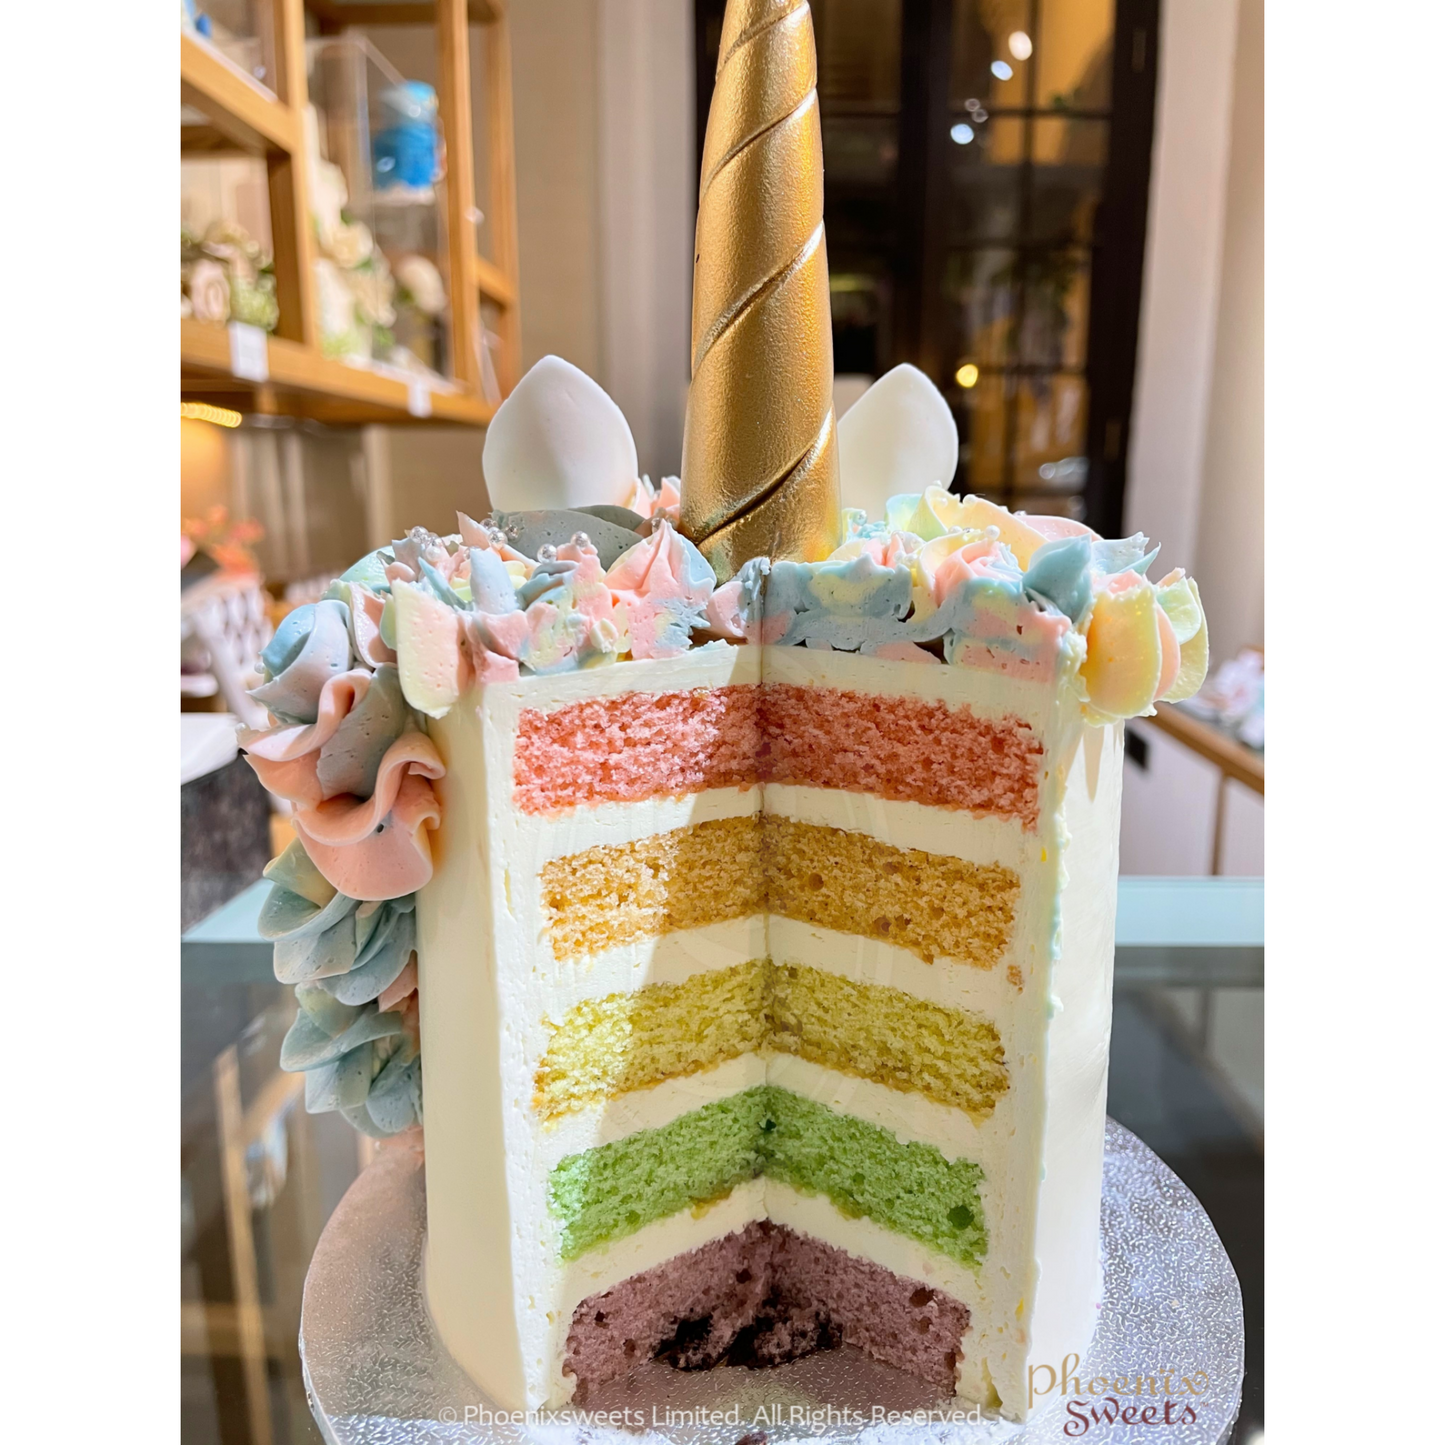 主題派對組合 - Rainbow Ring 蛋糕加杯子蛋糕塔